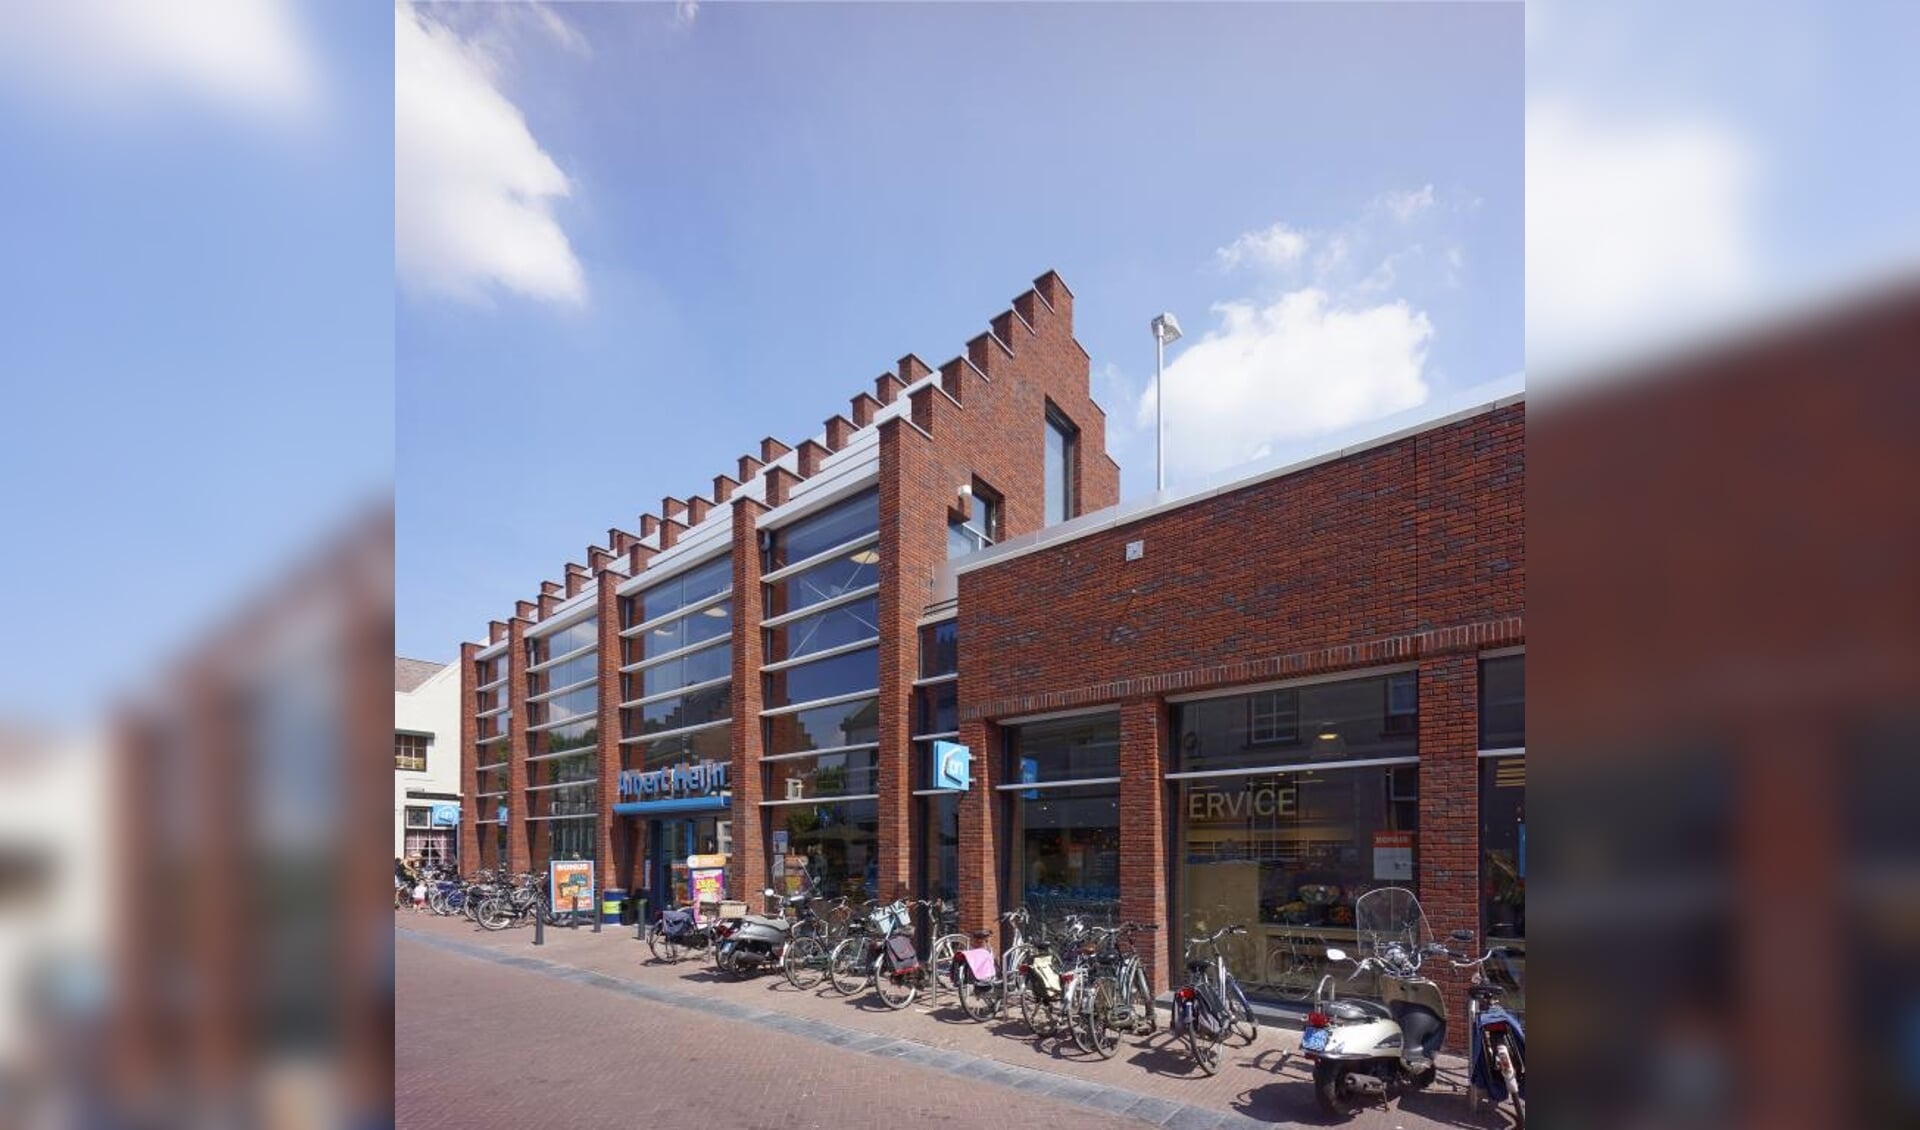 Albert Heijn Huissen Mooiste Supermarkt van Nederland